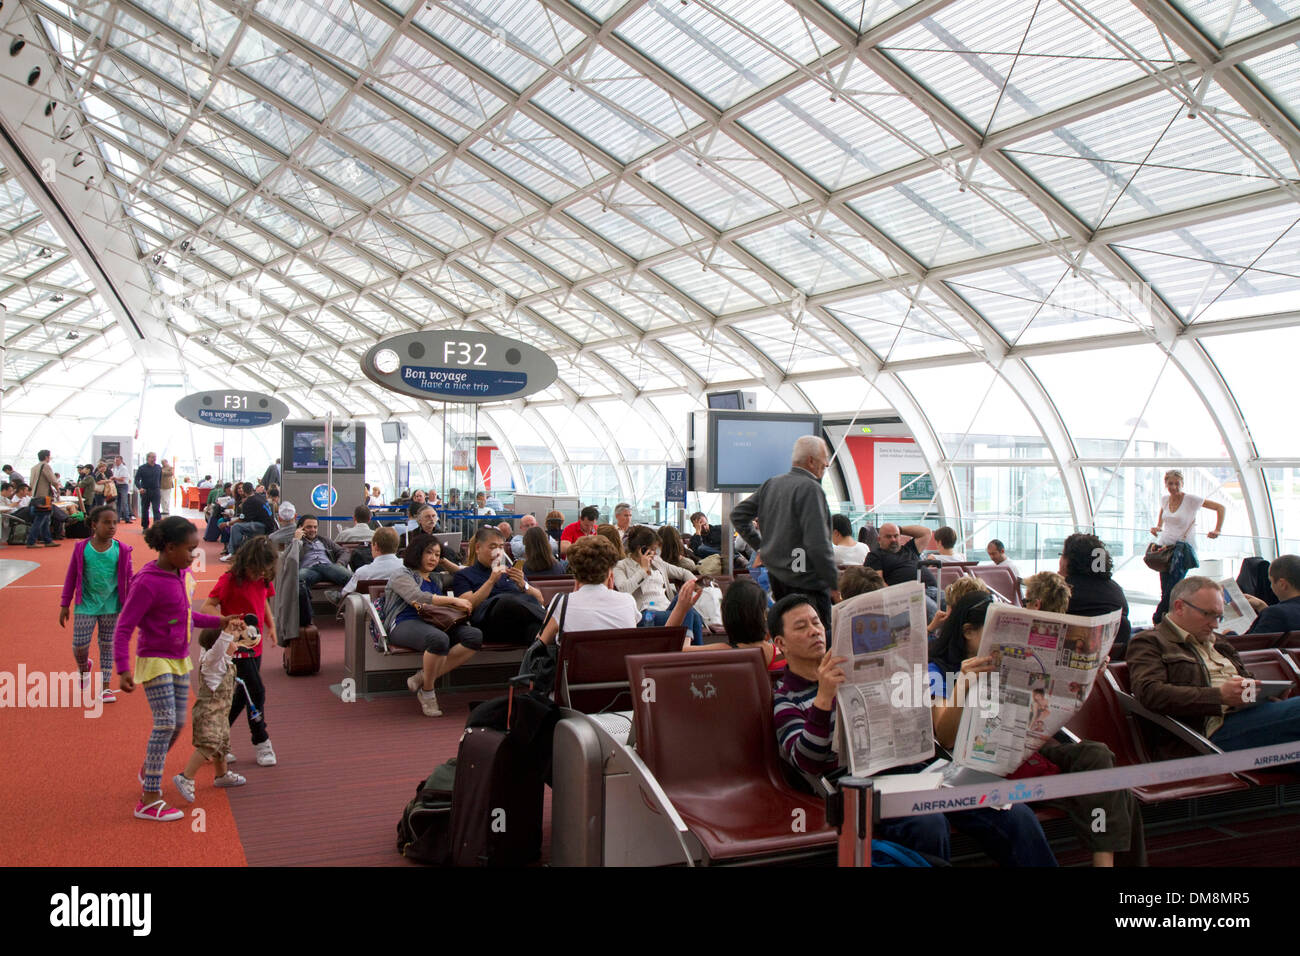 Les voyageurs dans une salle d'attente à l'aéroport Charles de Gaulle, Paris, France. Banque D'Images